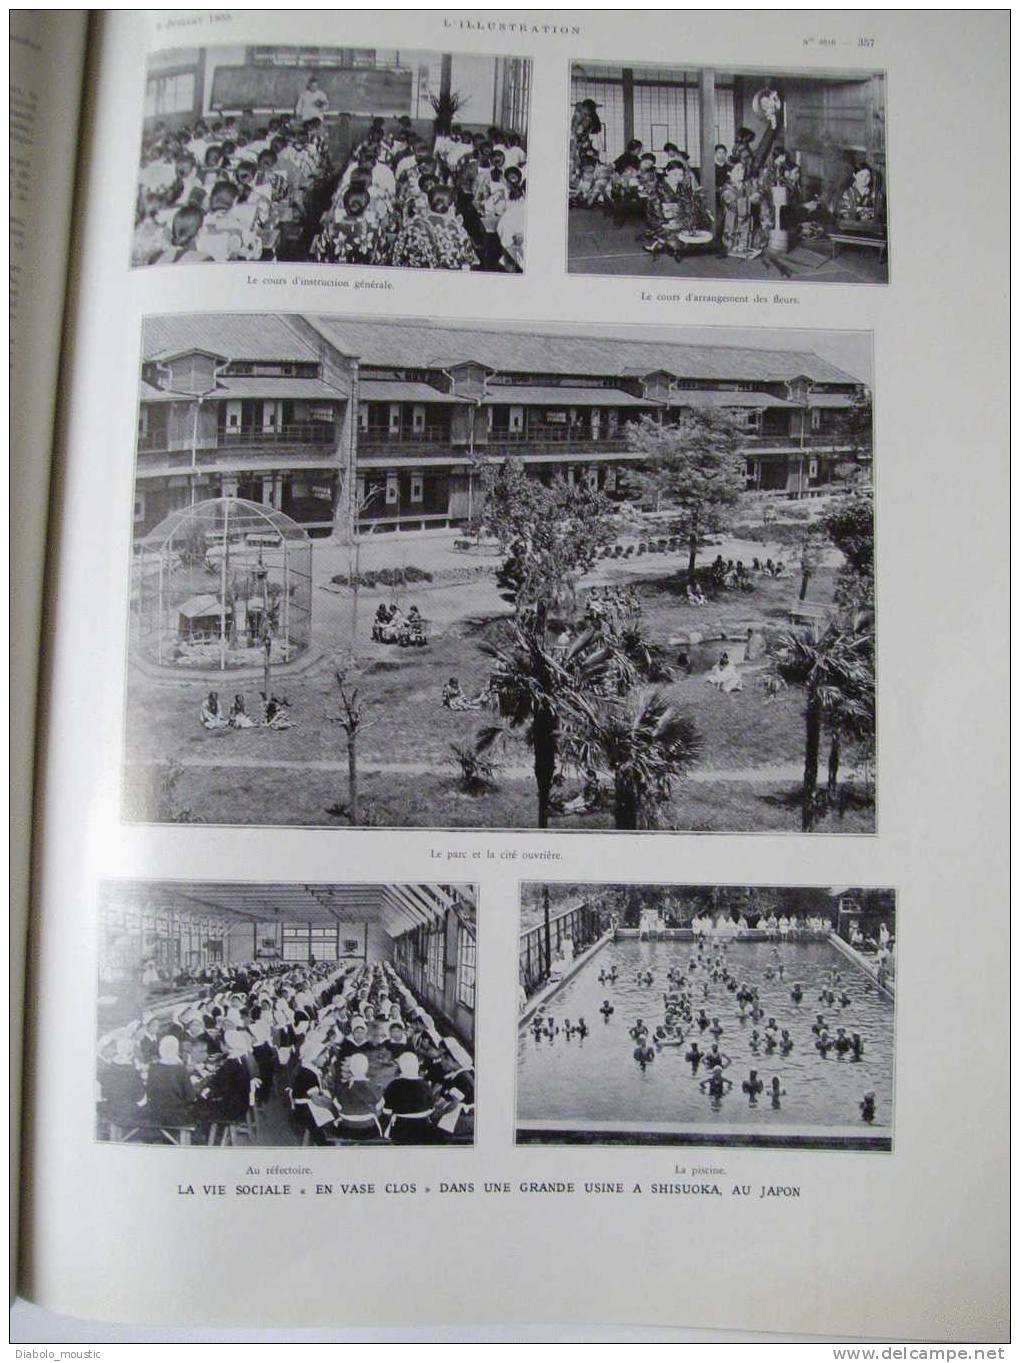 6 juillet 1935 : Les CROIX de FEU ; Aviation à BUC ; Courteline ; JAPON ; Le nouvel Hôtel de Ville de BAPAUME...........